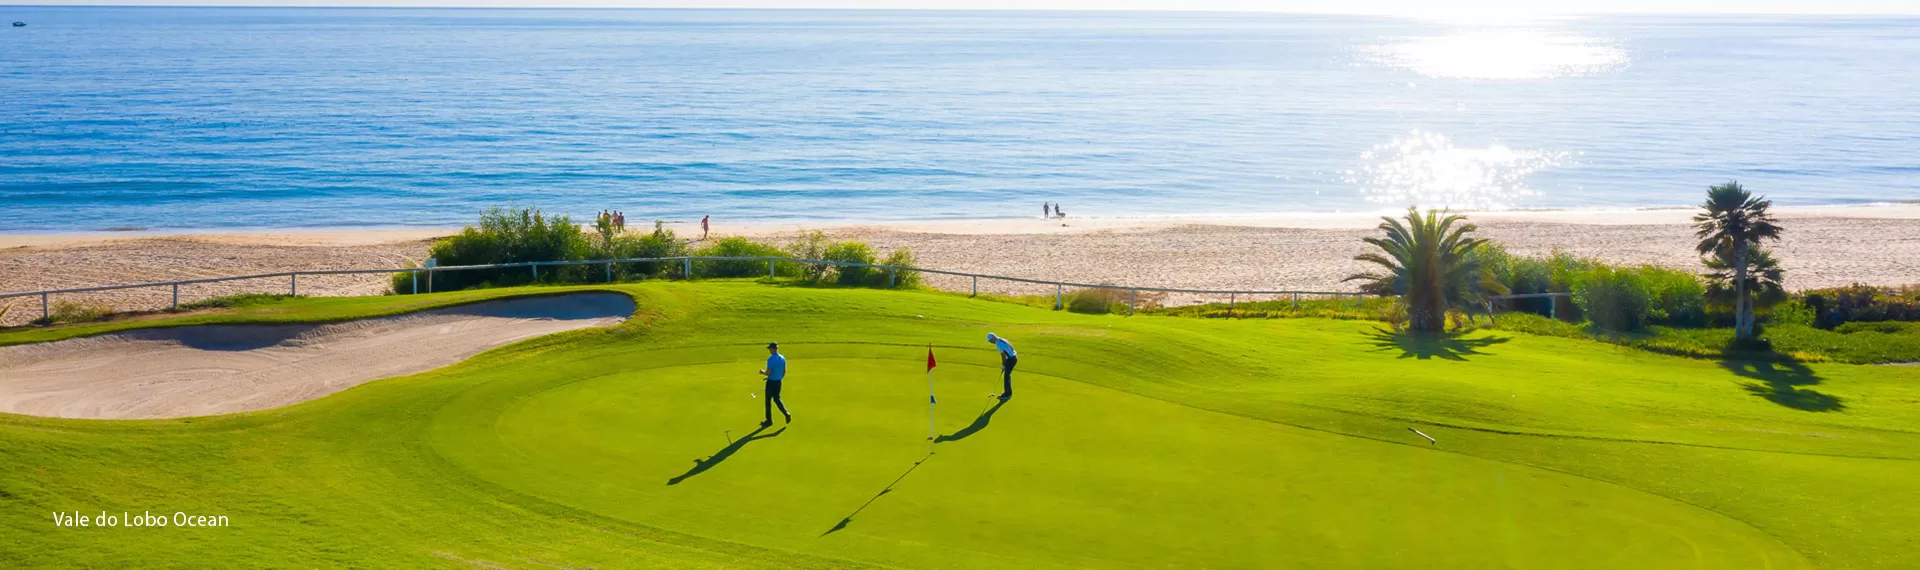 Amateur-golf-week-vale-do-lobo-ocean-players